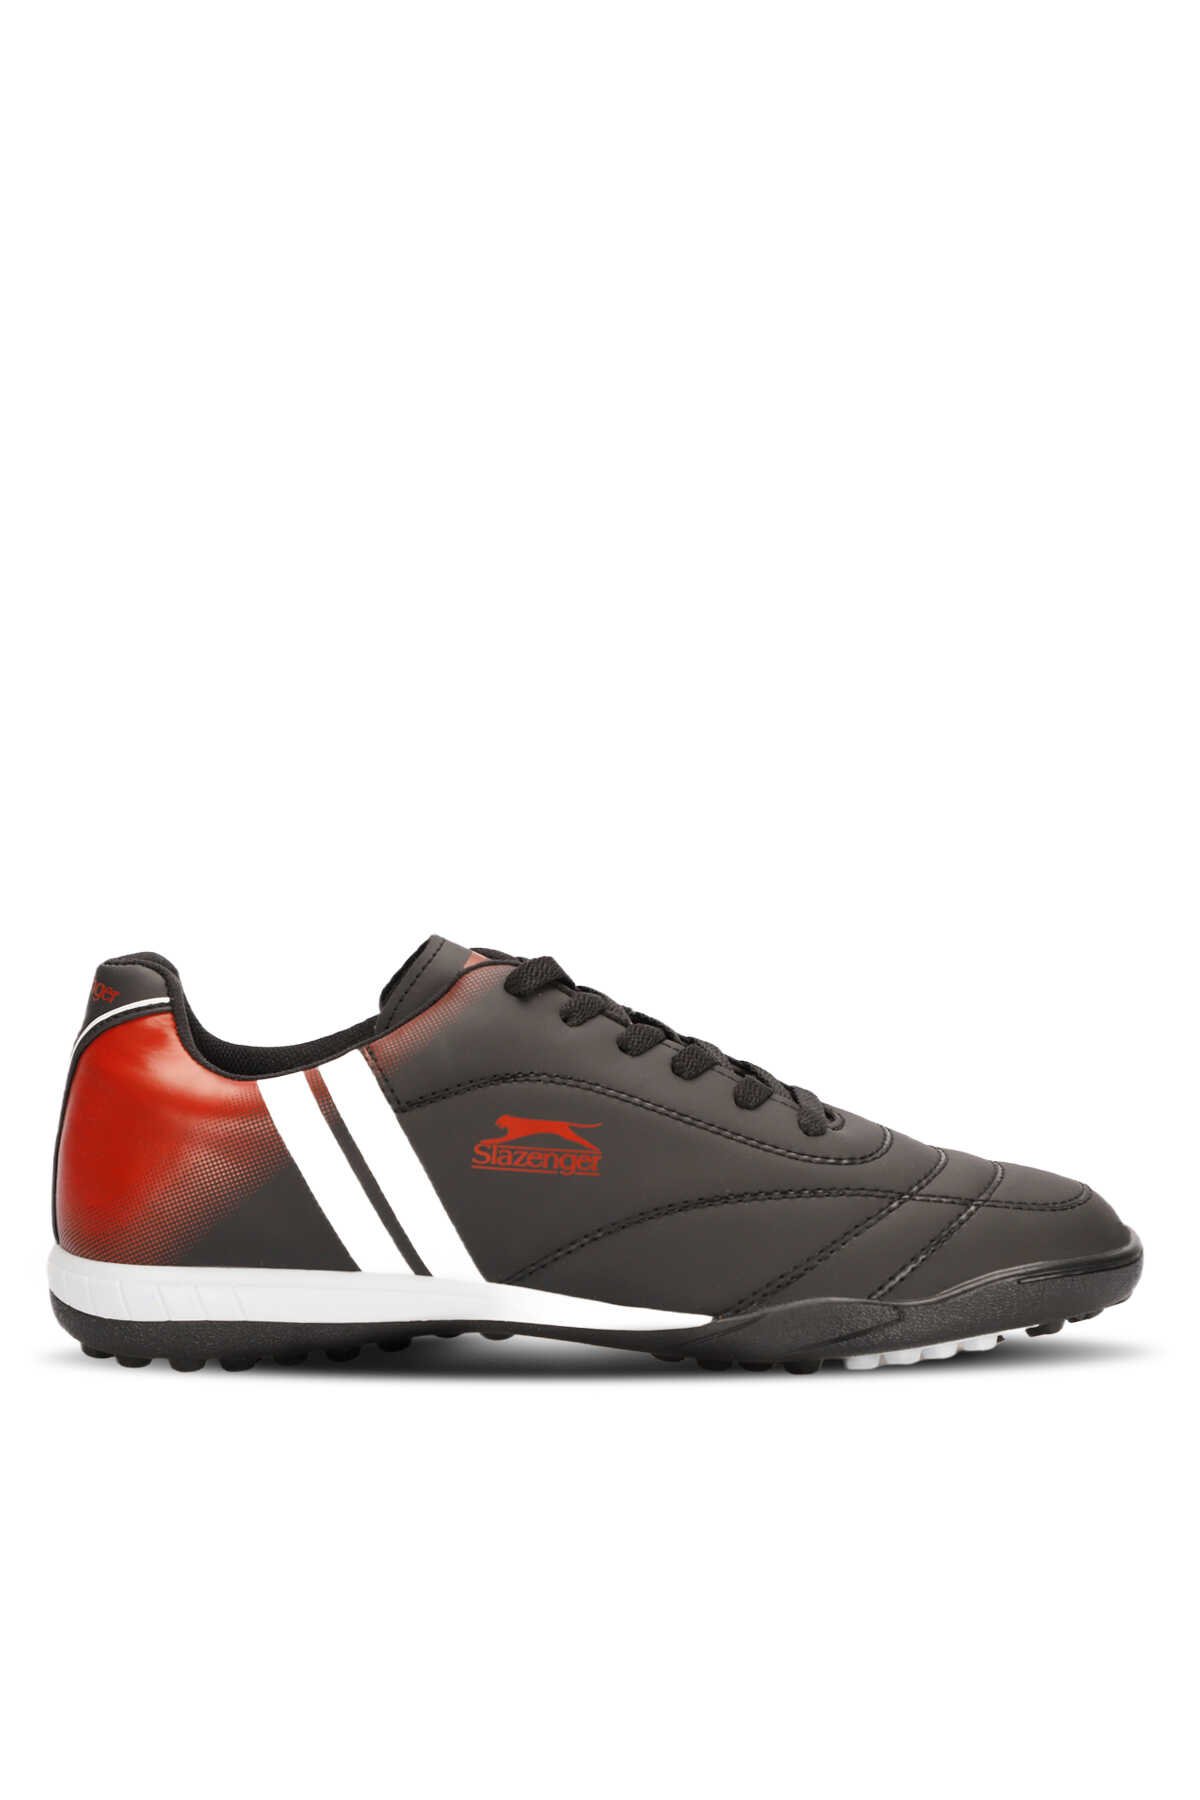 Slazenger - MARK HS Futbol Erkek Halı Saha Ayakkabı Siyah / Beyaz / Kırmızı